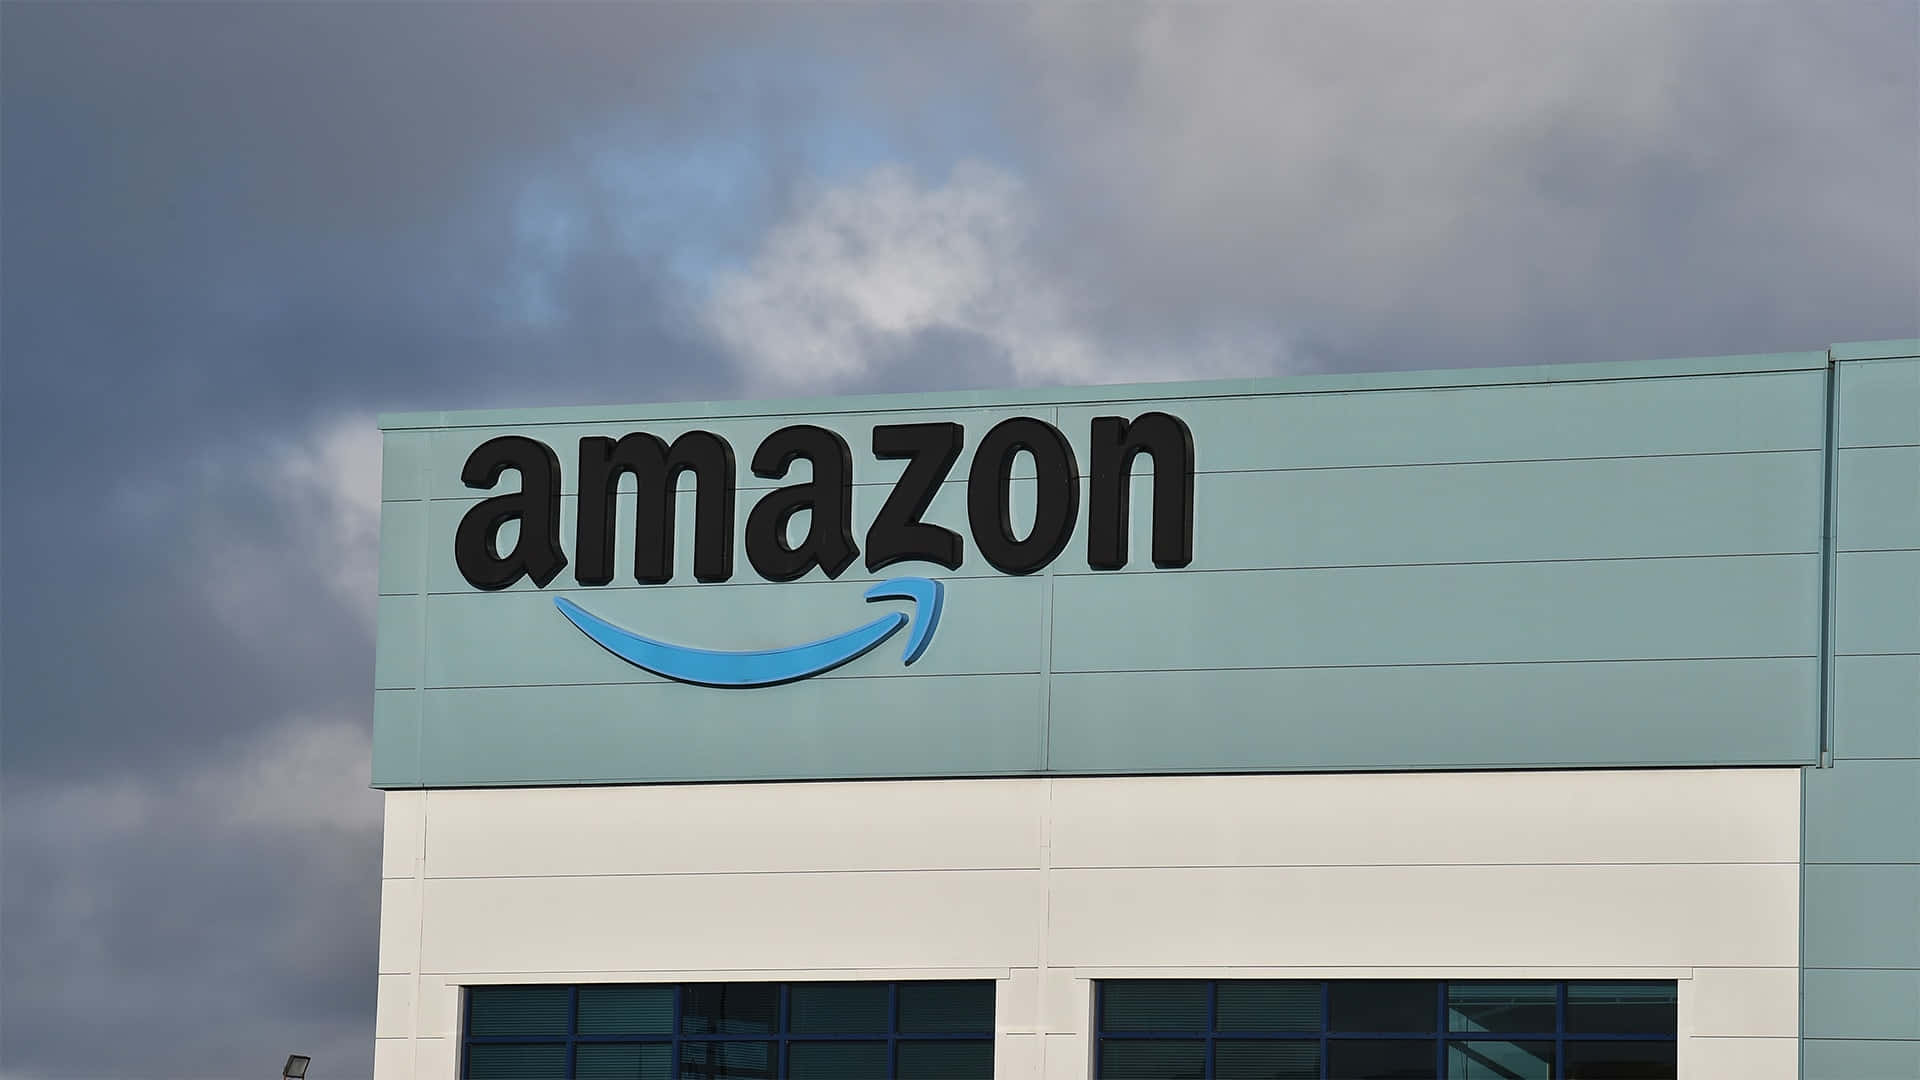 Logotipode Amazon Uk En Un Edificio De Color Teal Claro. Fondo de pantalla